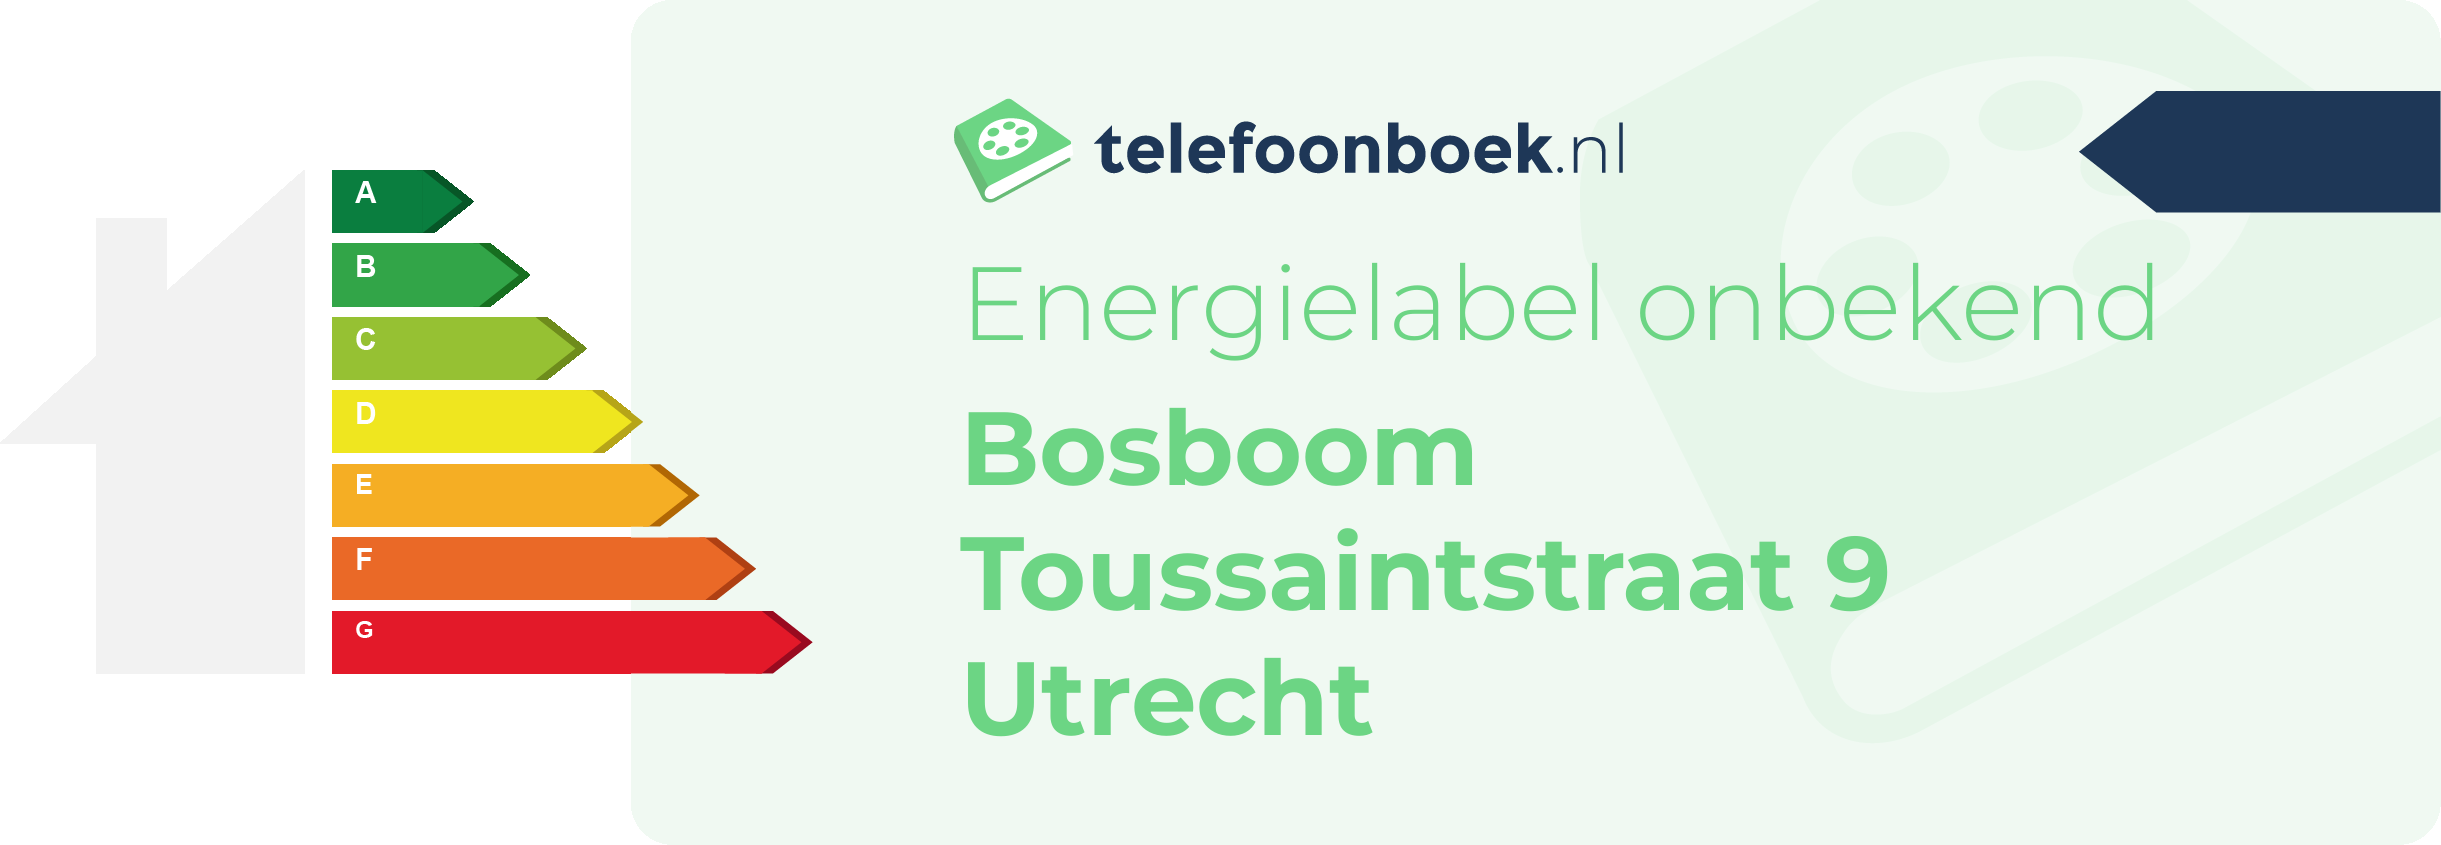 Energielabel Bosboom Toussaintstraat 9 Utrecht